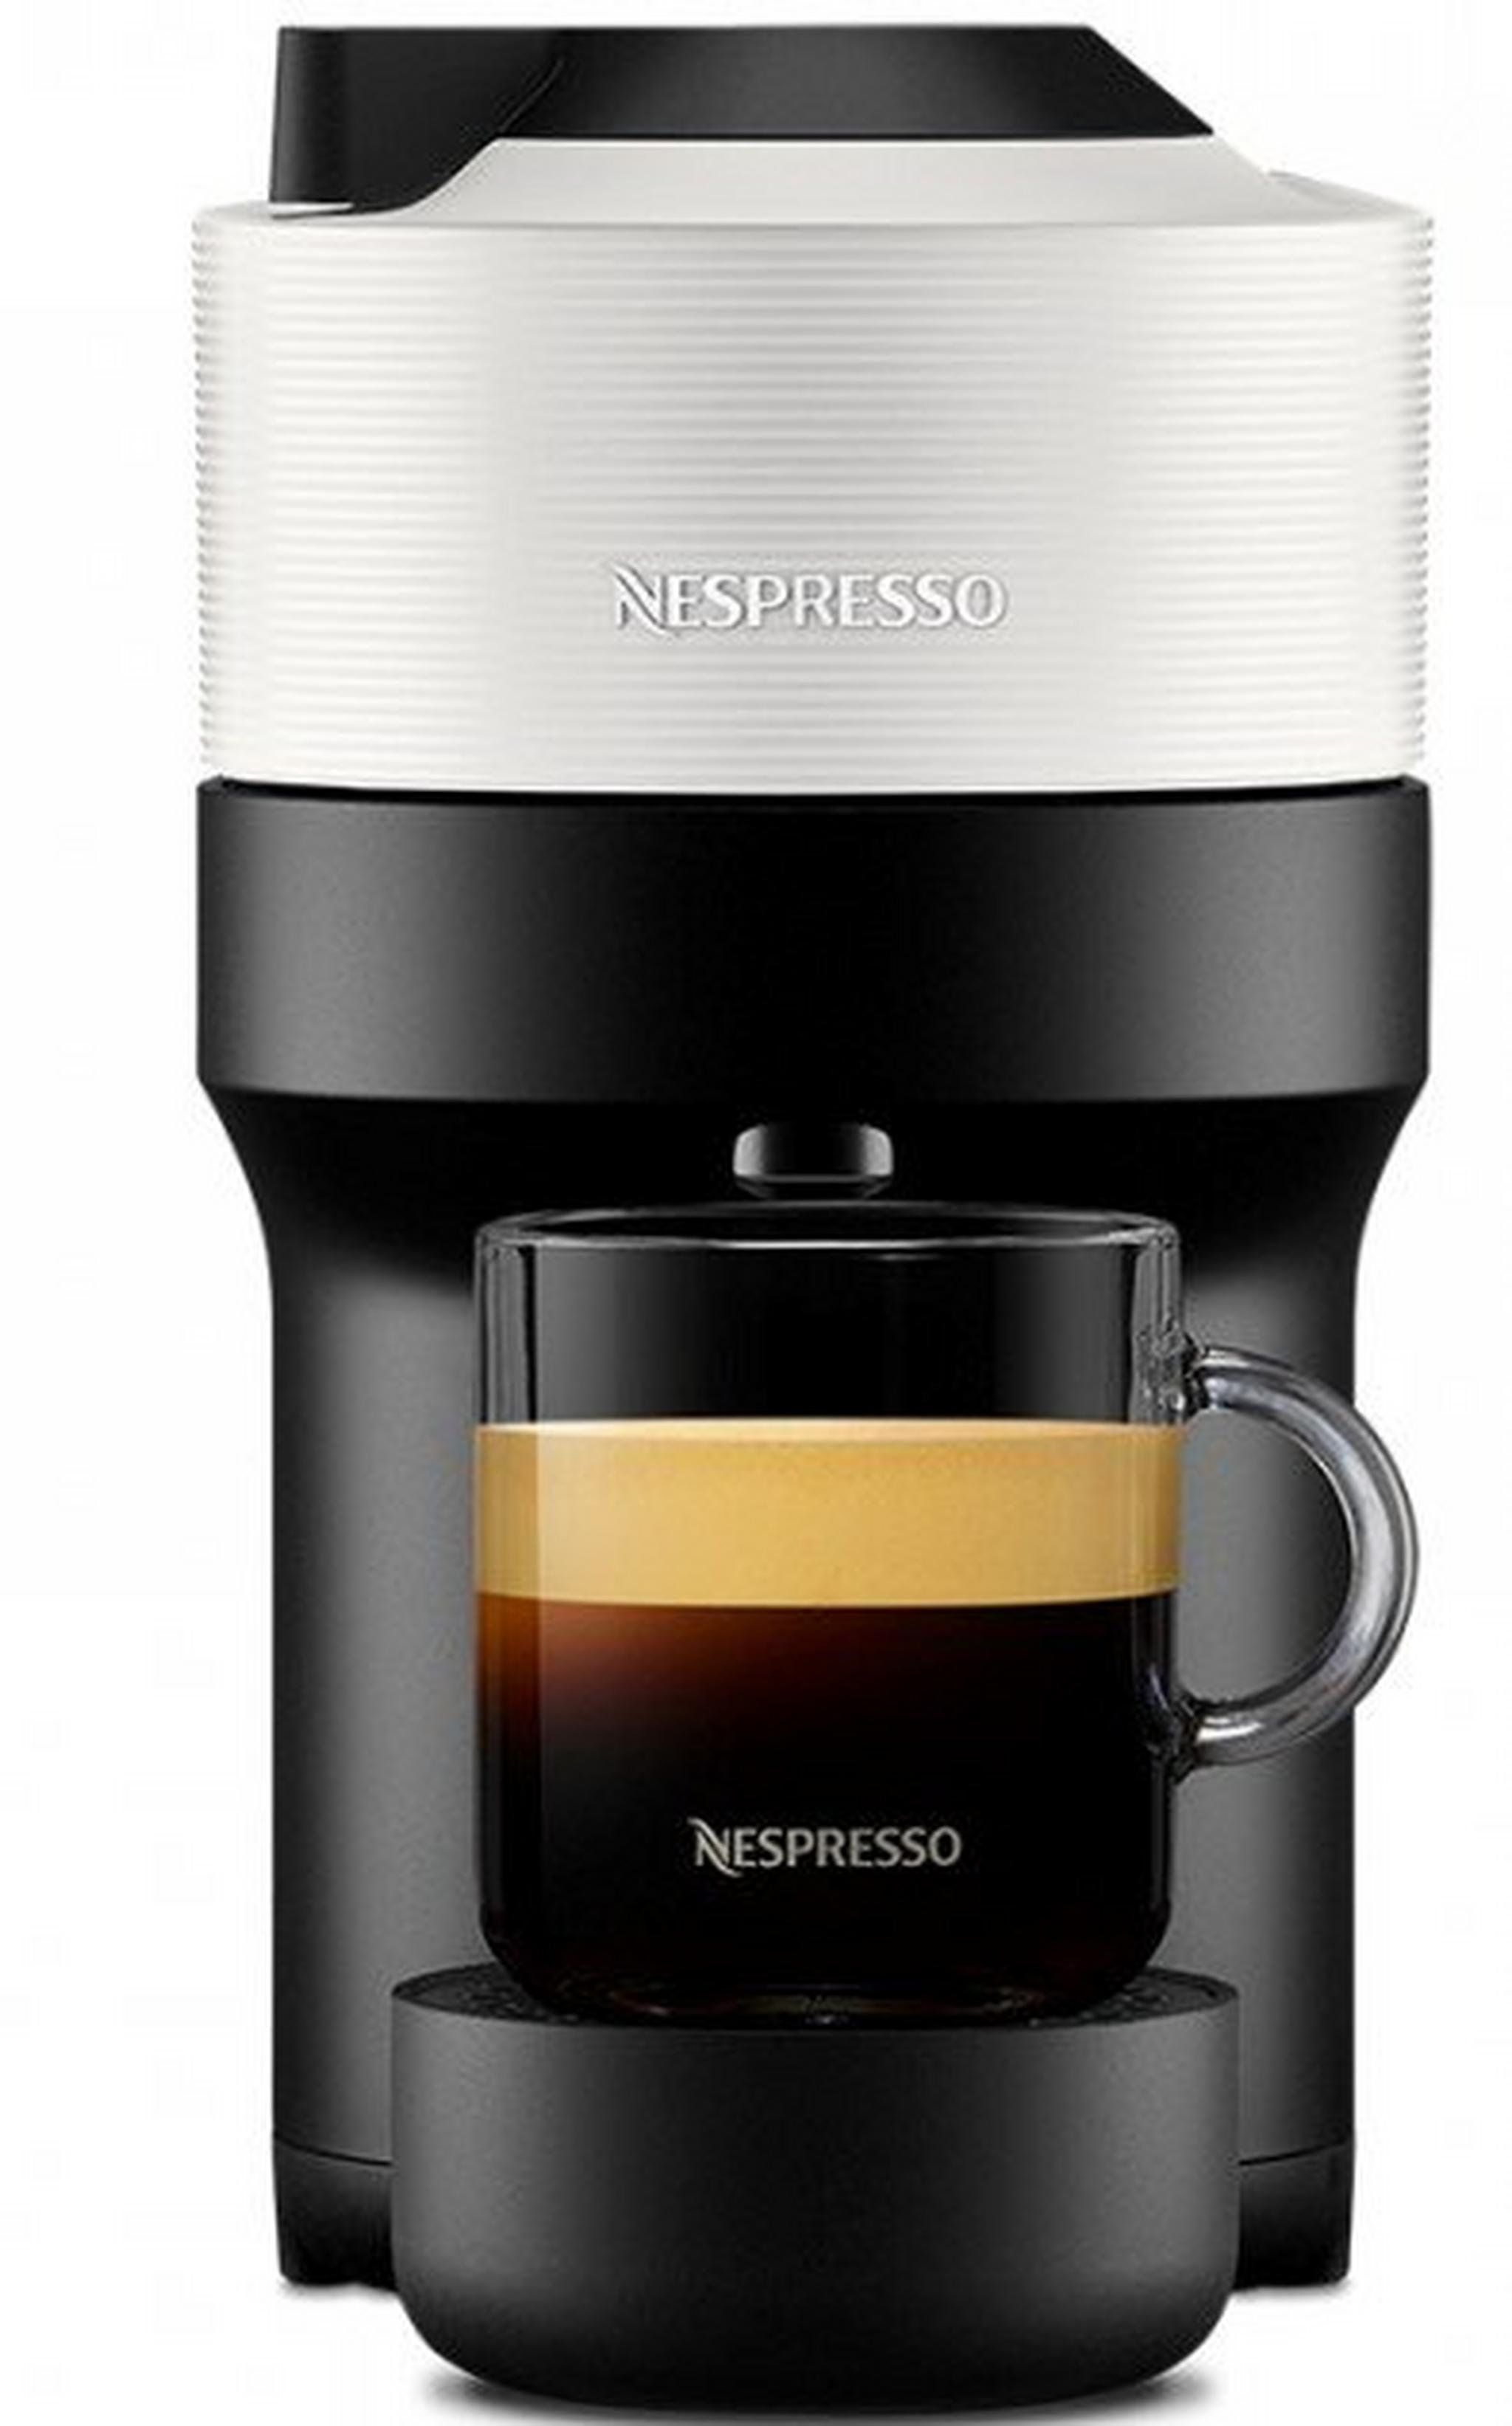 ماكينة تحضير القهوة فيرتو بوب من نسبريسو، قدرة 1260 واط، سعة 0.6 لتر، GCV2-GB-WH-NE – ابيض جوز الهند